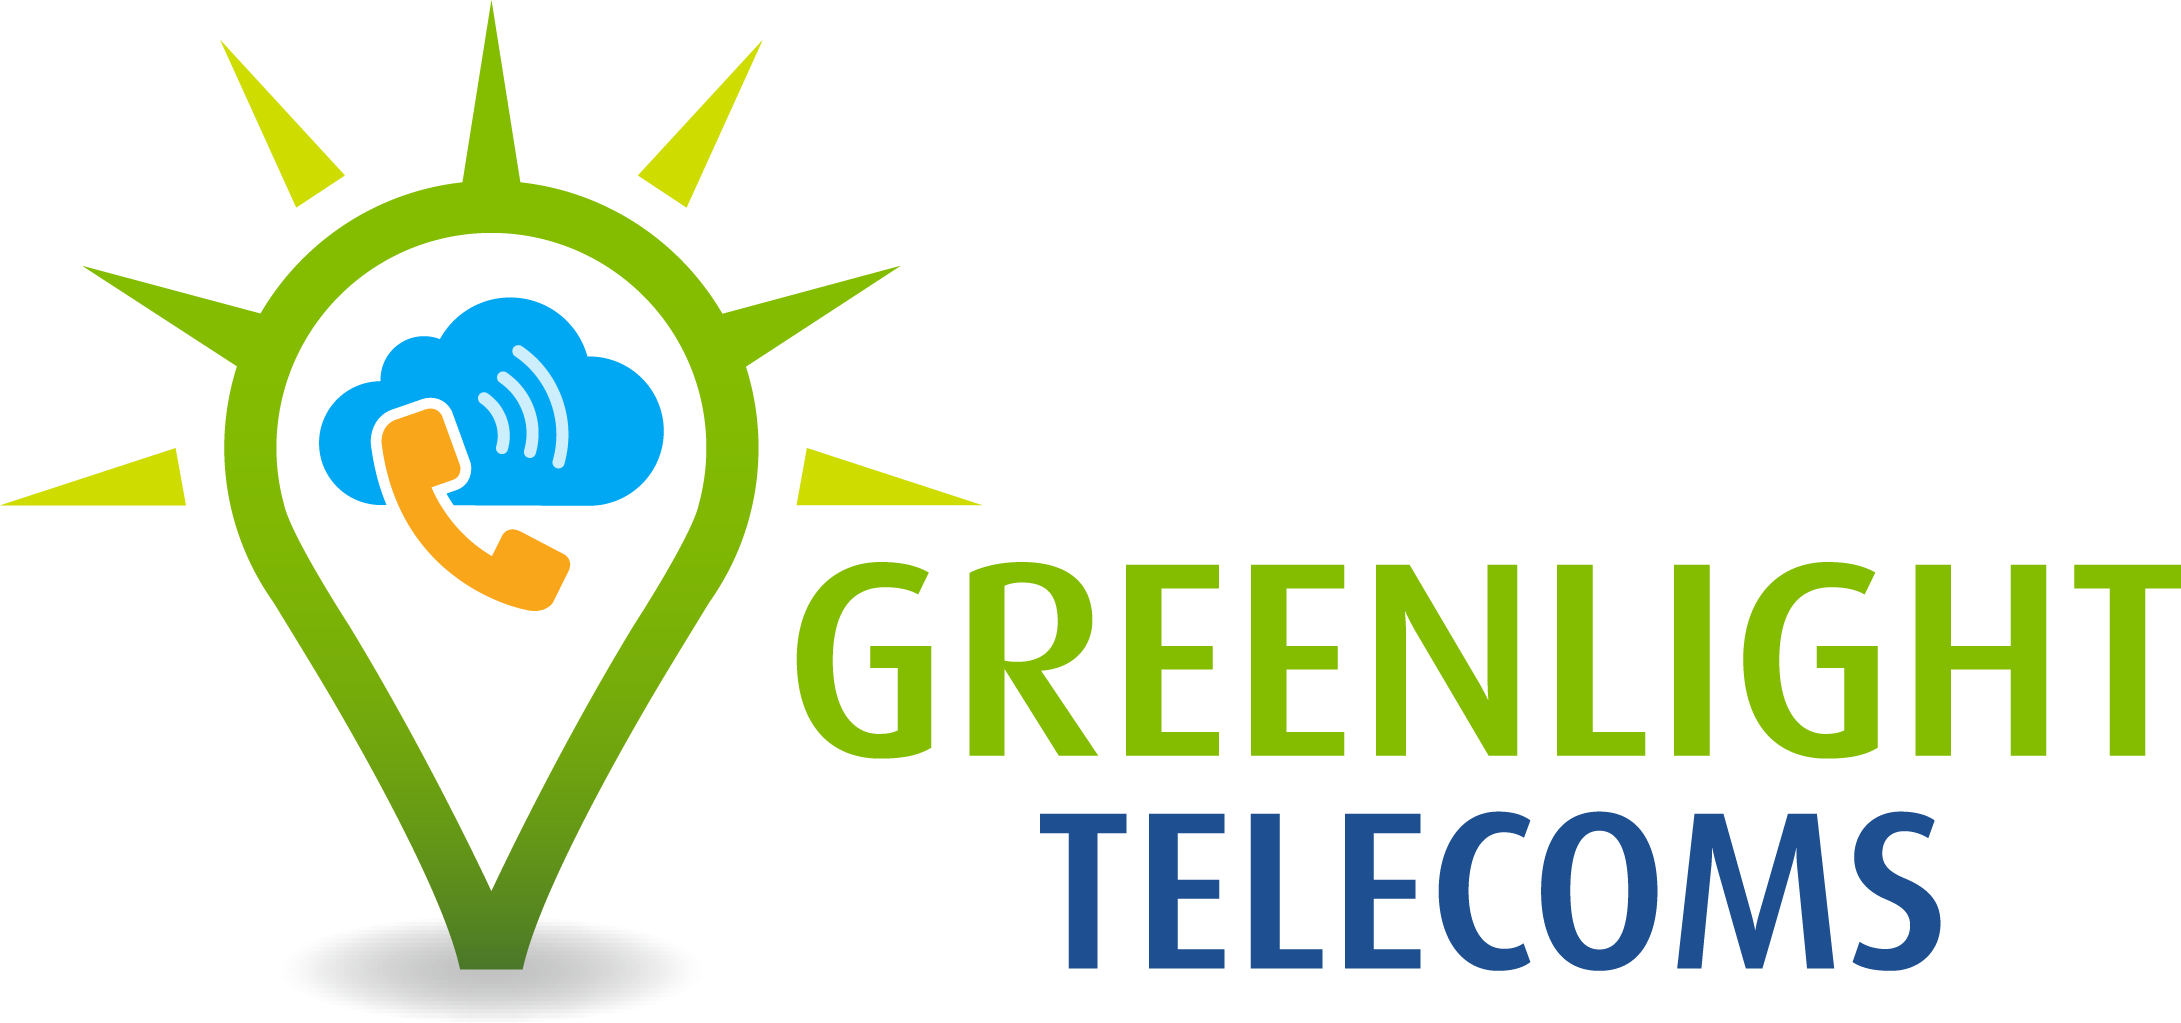 Greenlight Telecoms Logo